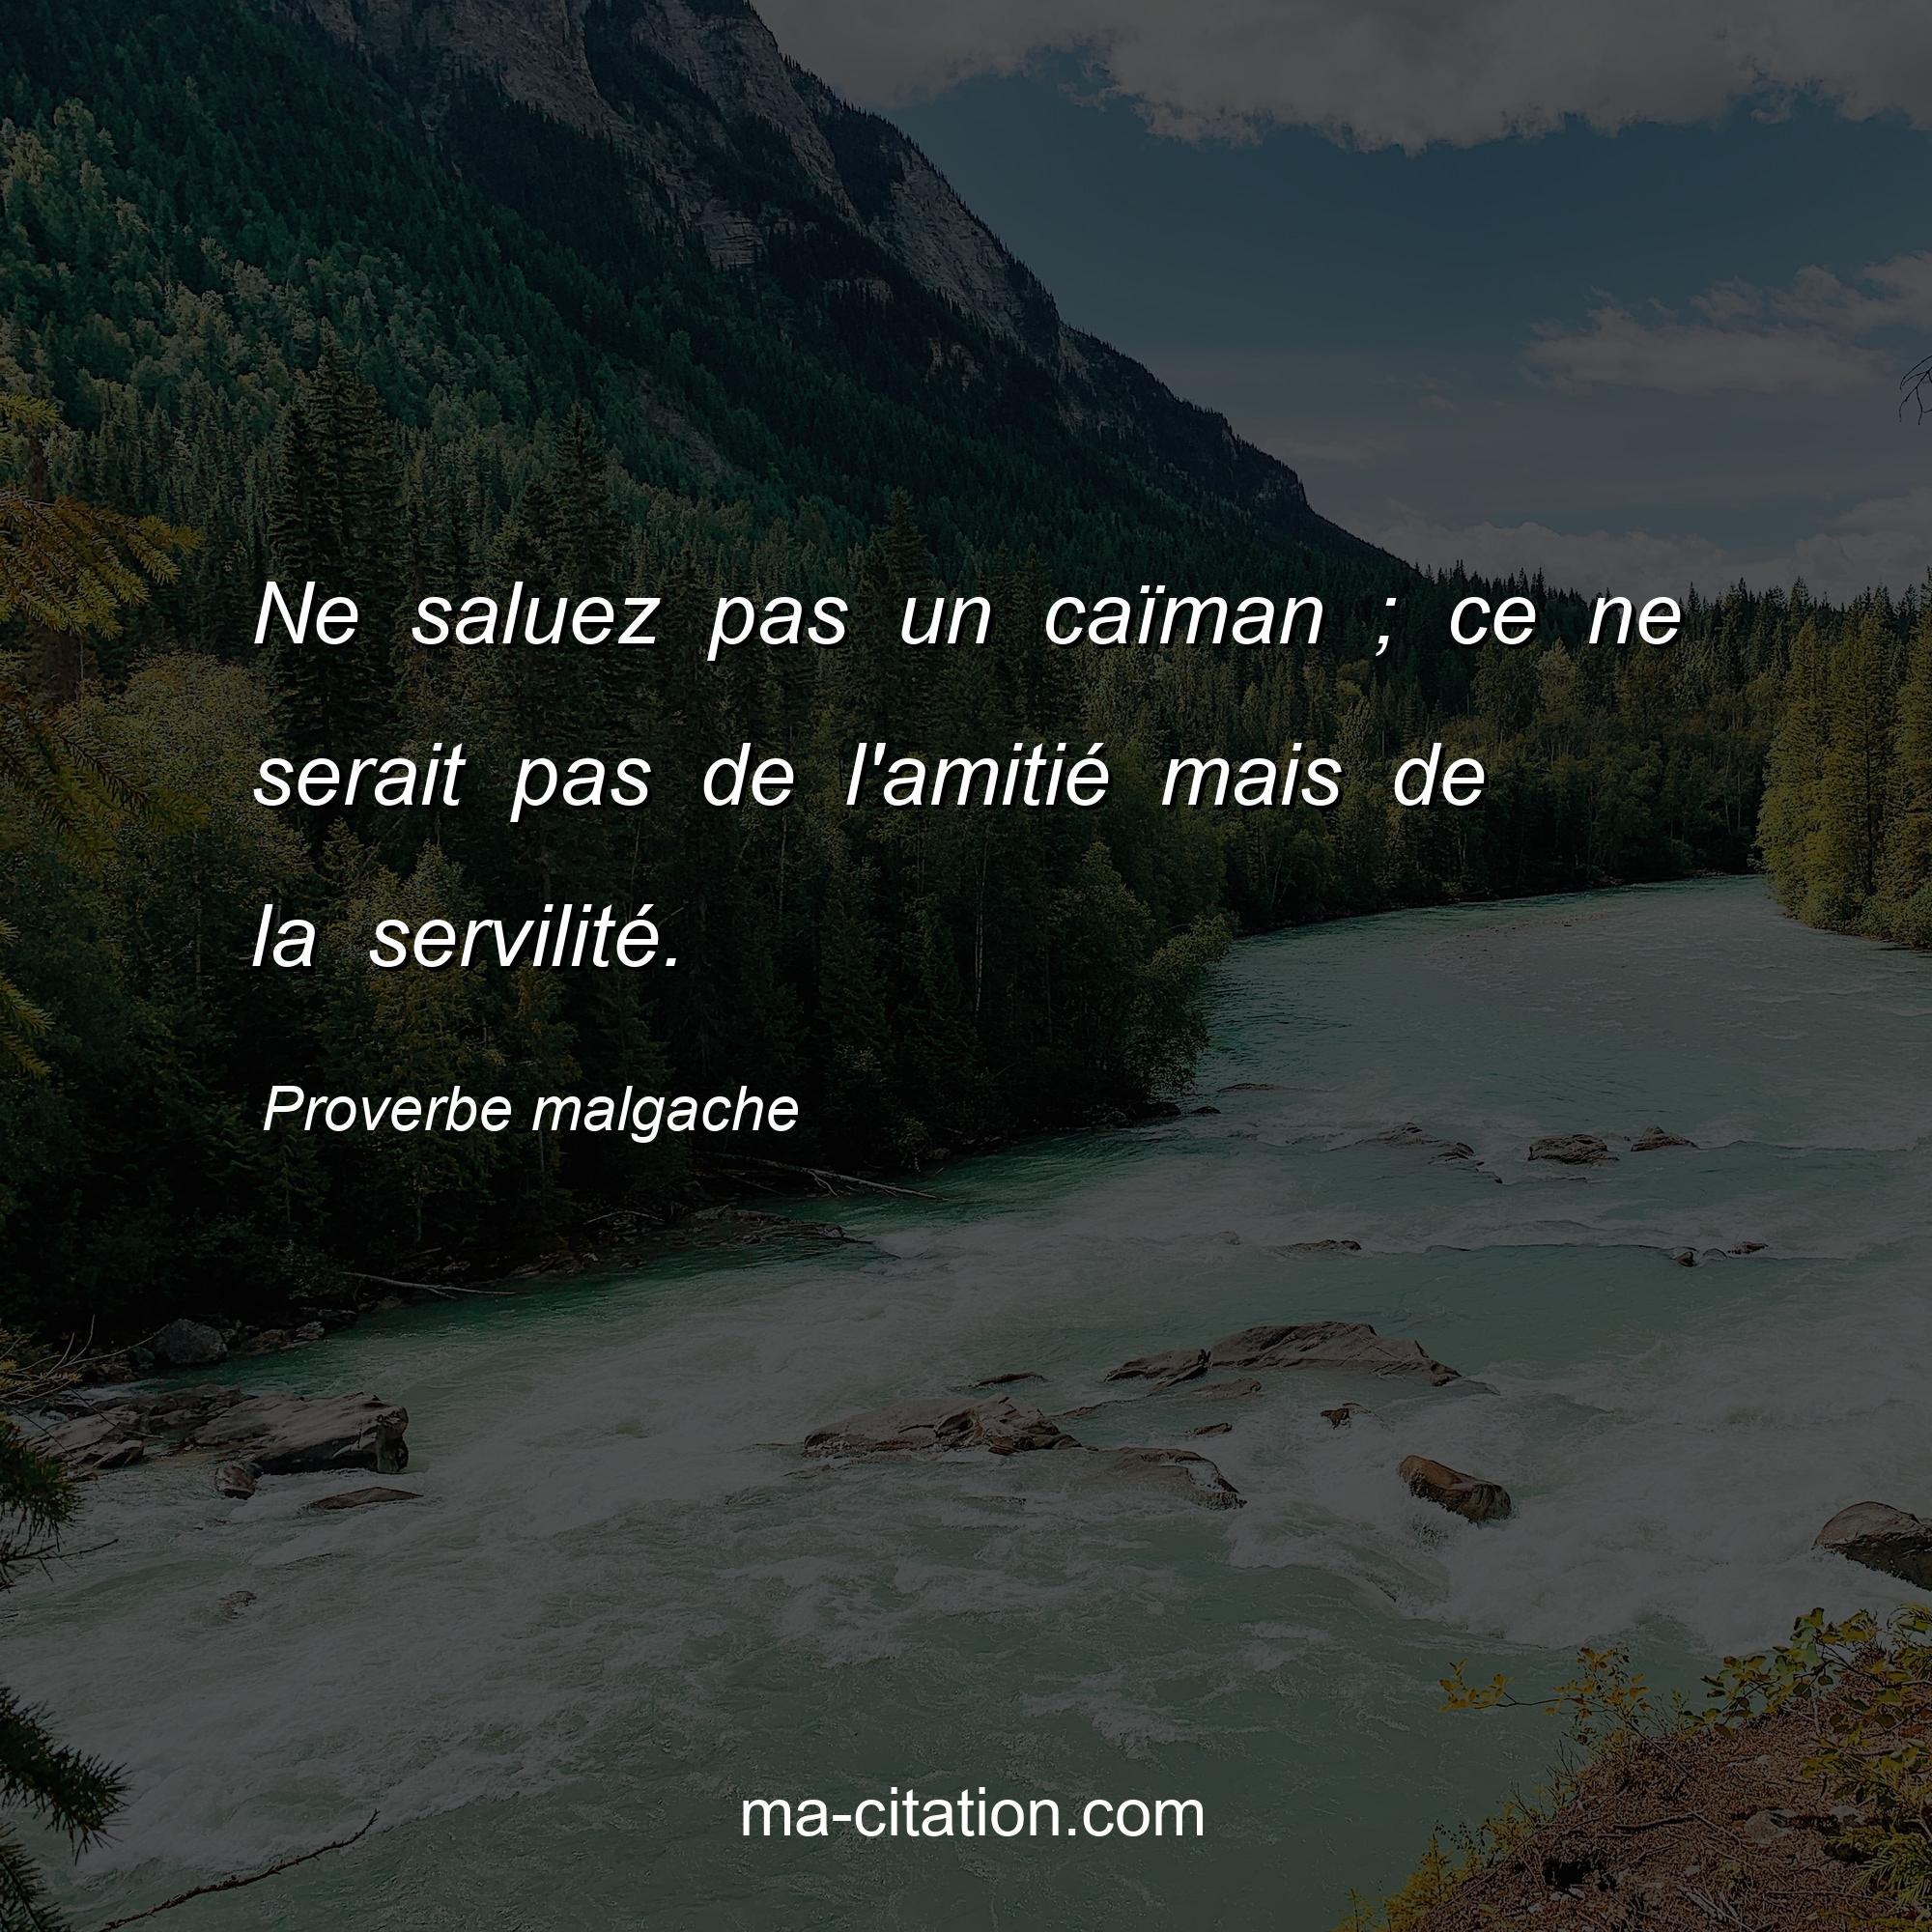 Proverbe malgache : Ne saluez pas un caïman ; ce ne serait pas de l'amitié mais de la servilité.